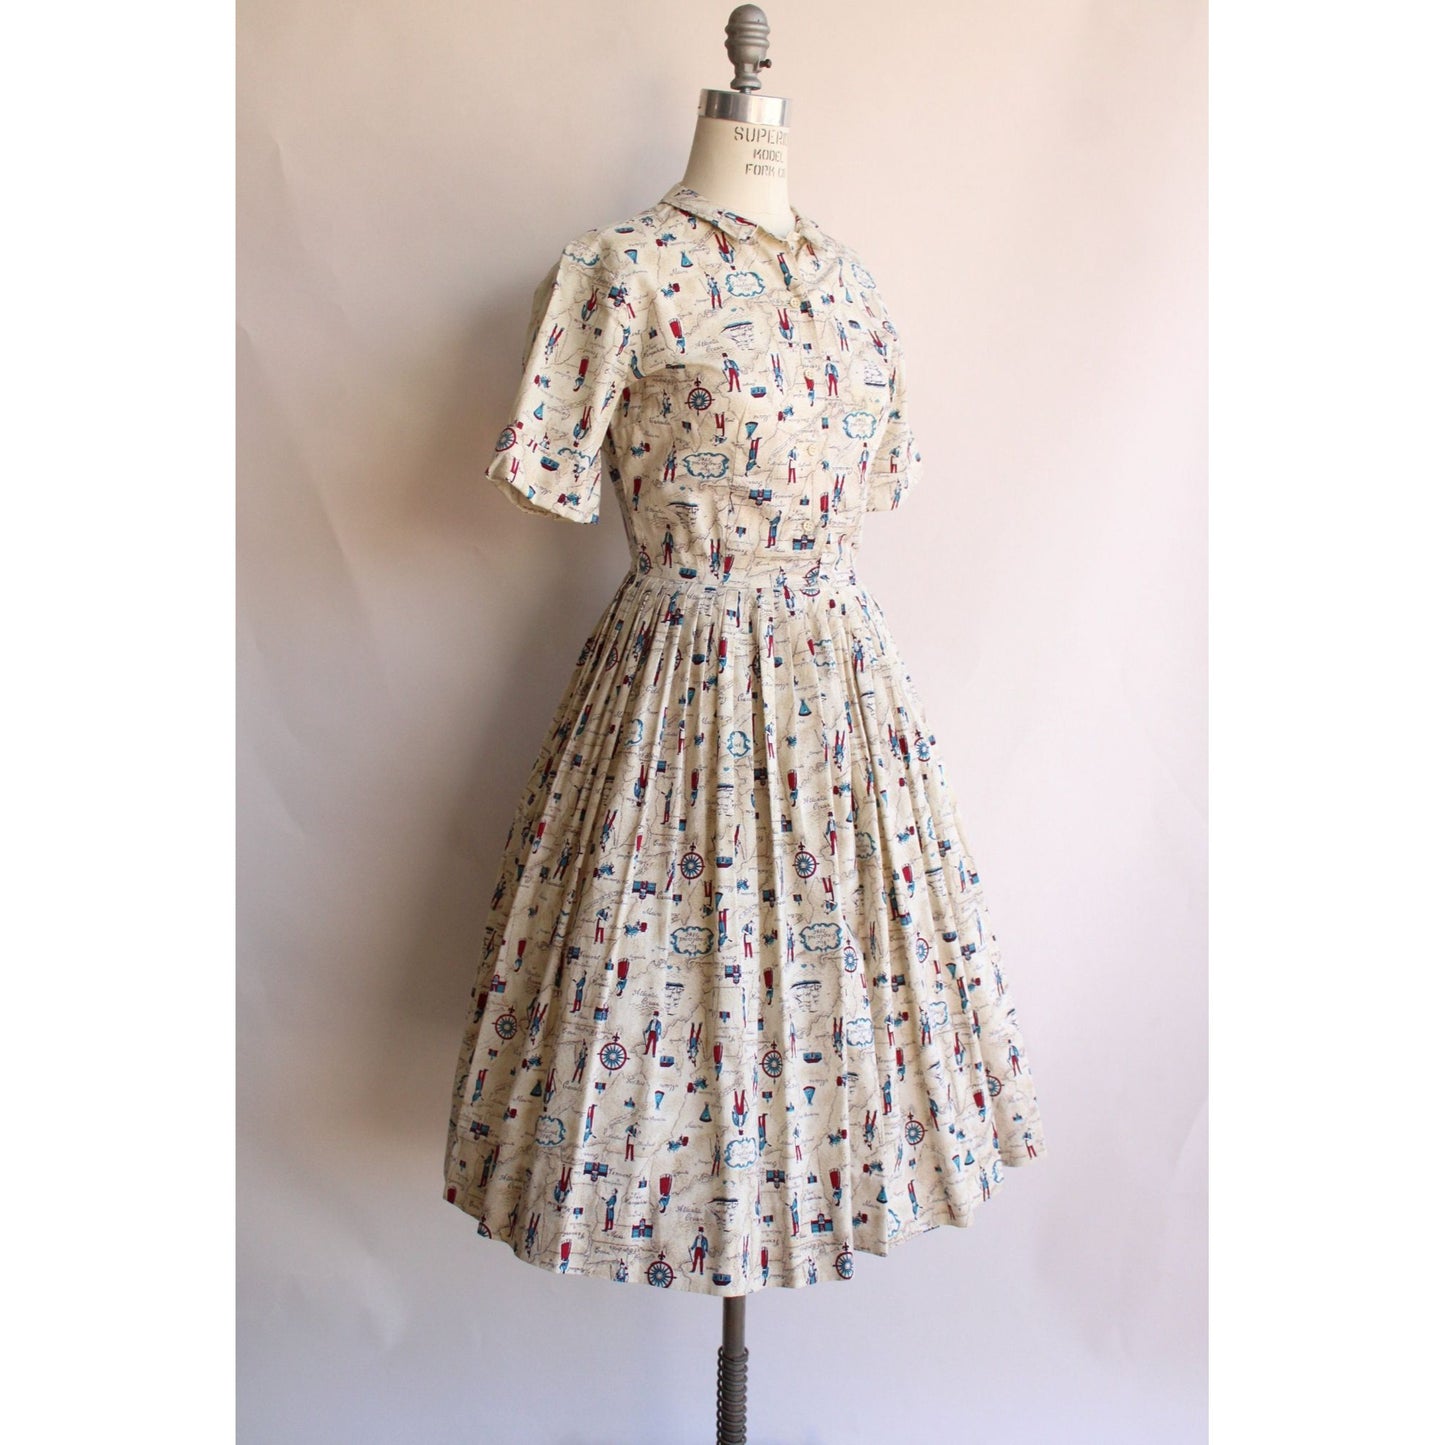 Vintage 1950s Novelty Print Dress with Belt and Pocket